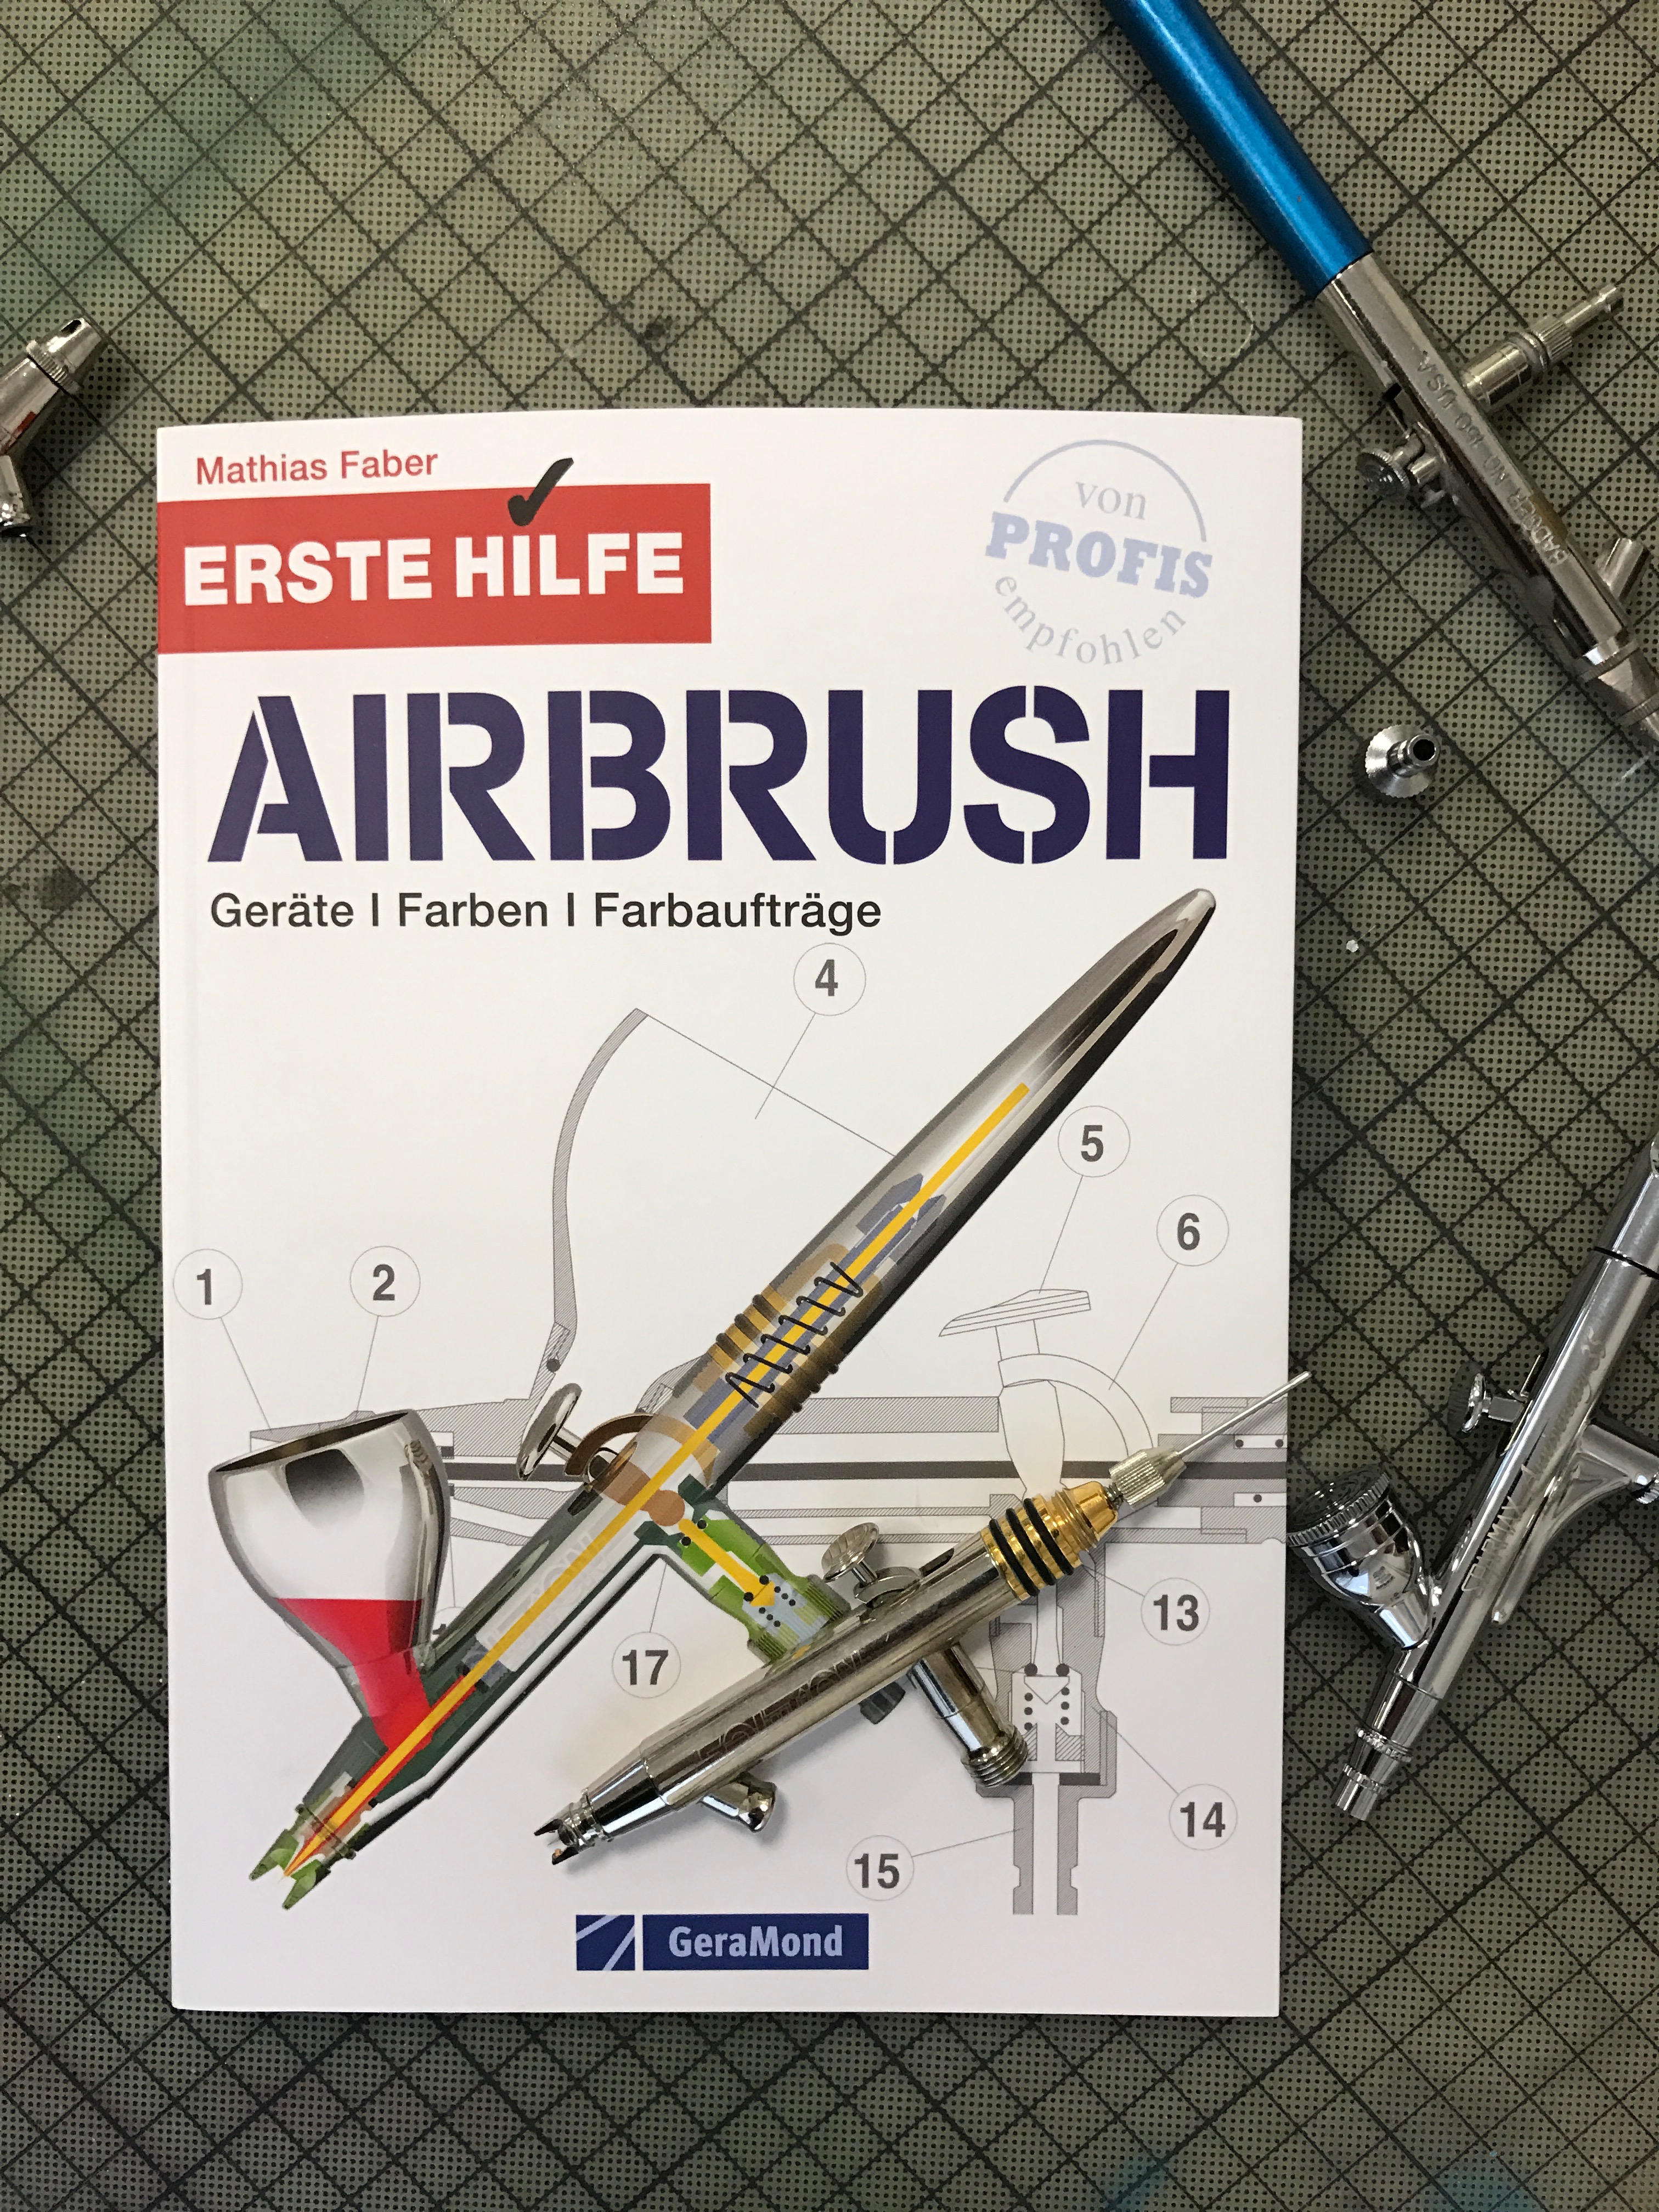 Erste Hilfe Airbrush: Tipps für den erfolgreichen Umgang mit der Airbrush